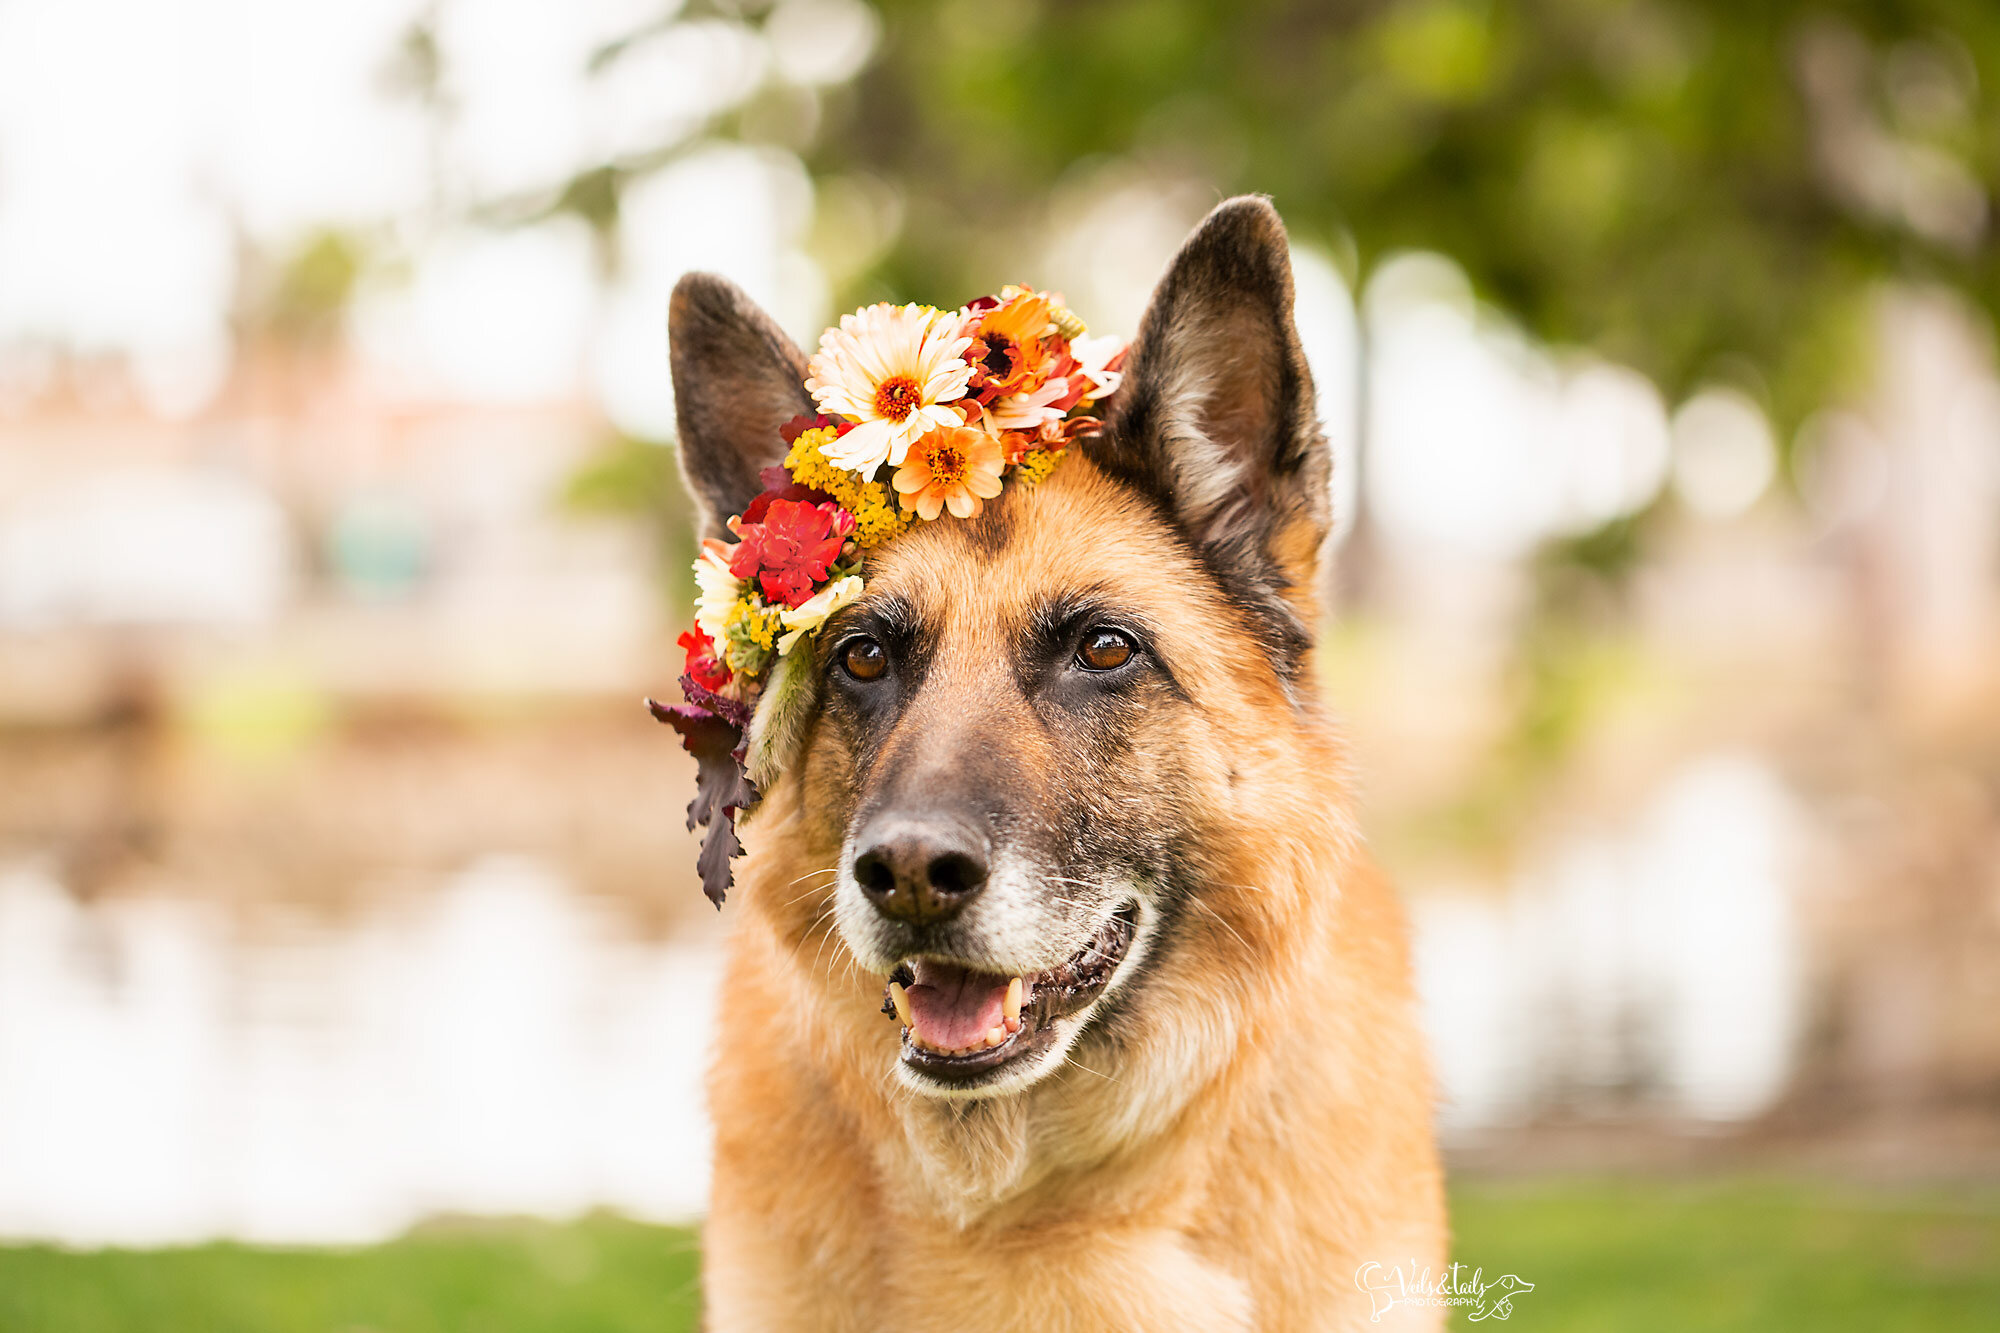 German Shepherd in a flower crown, Santa Barbara pet photographer